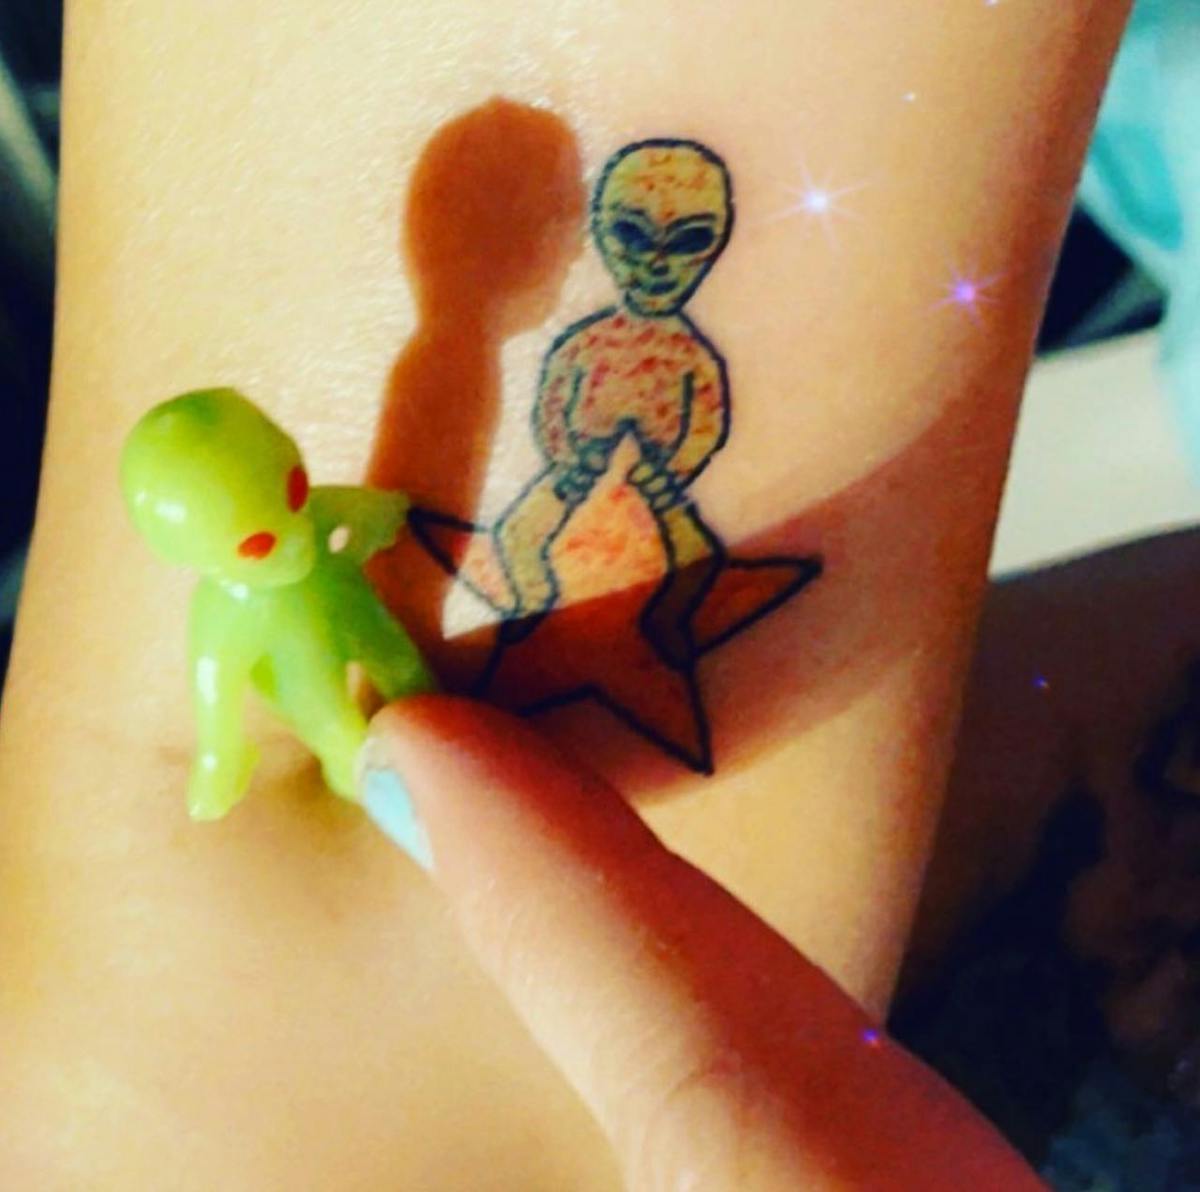 Alien & alien tattoo 👽